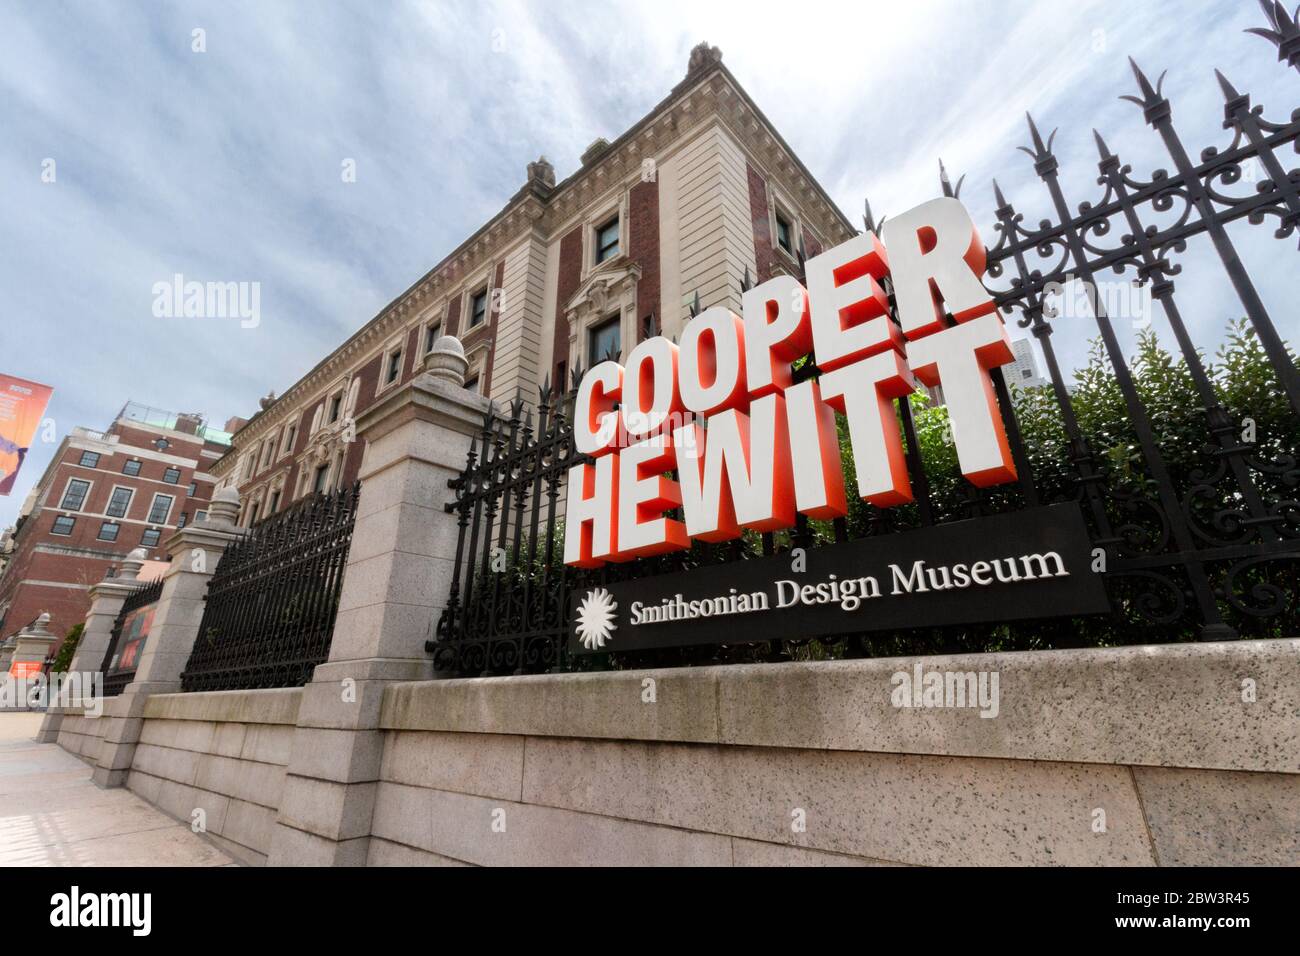 Le Cooper Hewitt Smithsonian Design Museum. Fondé en 1896, il est le seul musée américain de design historique et contemporain. Banque D'Images